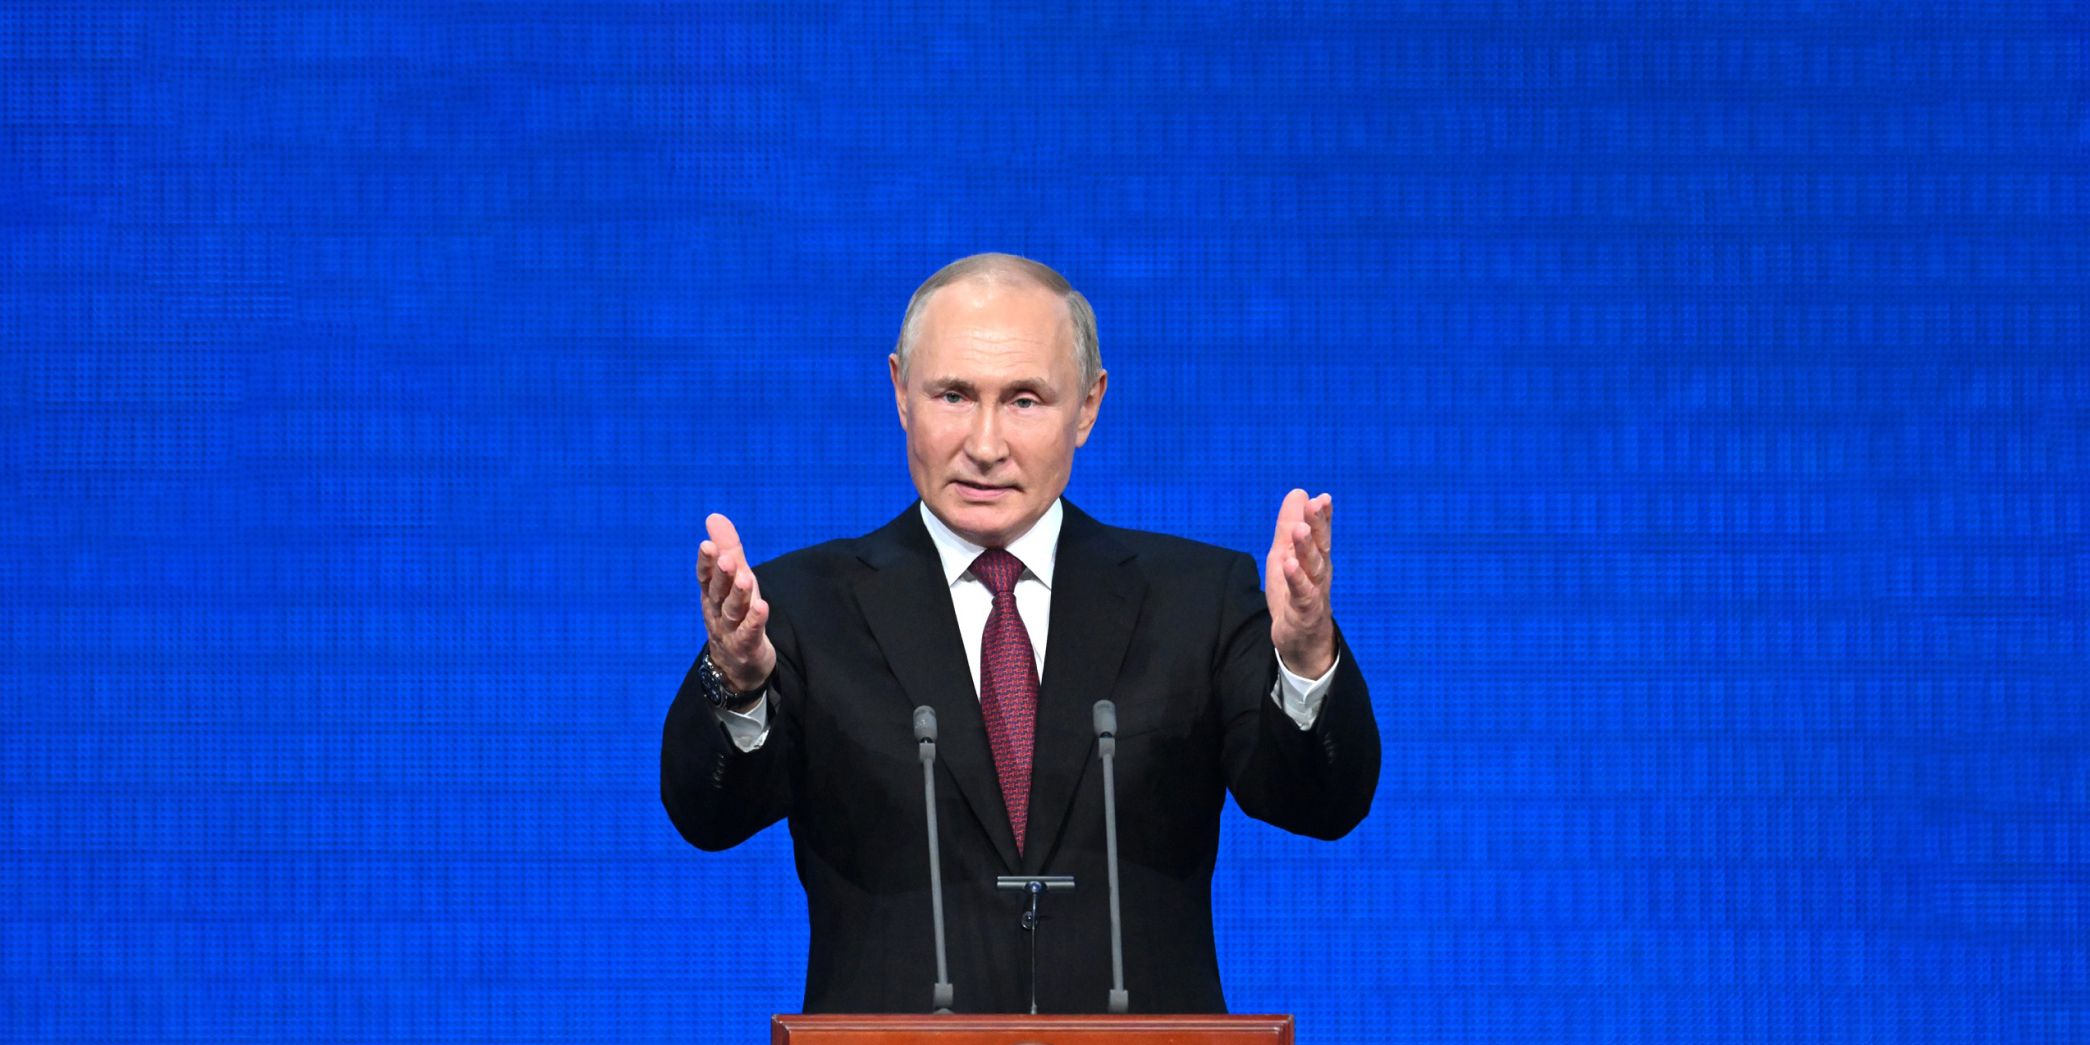 Открыт сайт кандидата на должность Президента Владимира Путина